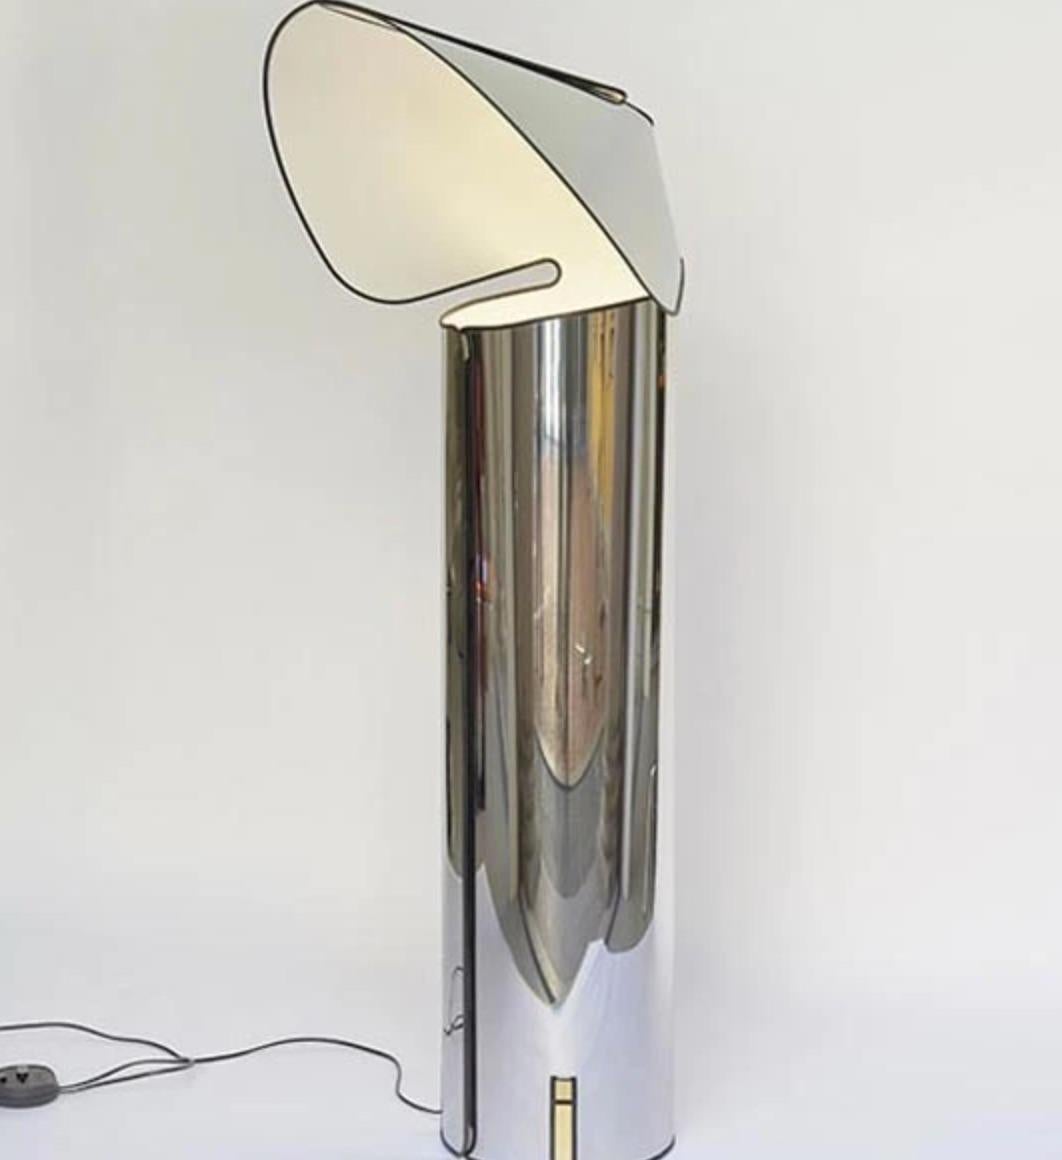 Le lampadaire Chiara, dessiné par Mario Bellini pour Flos, conçu à l'origine en 1969, est un modèle emblématique formé d'une simple feuille d'acier inoxydable poli qui a été découpée et roulée en cylindre. Cette structure en forme d'origami